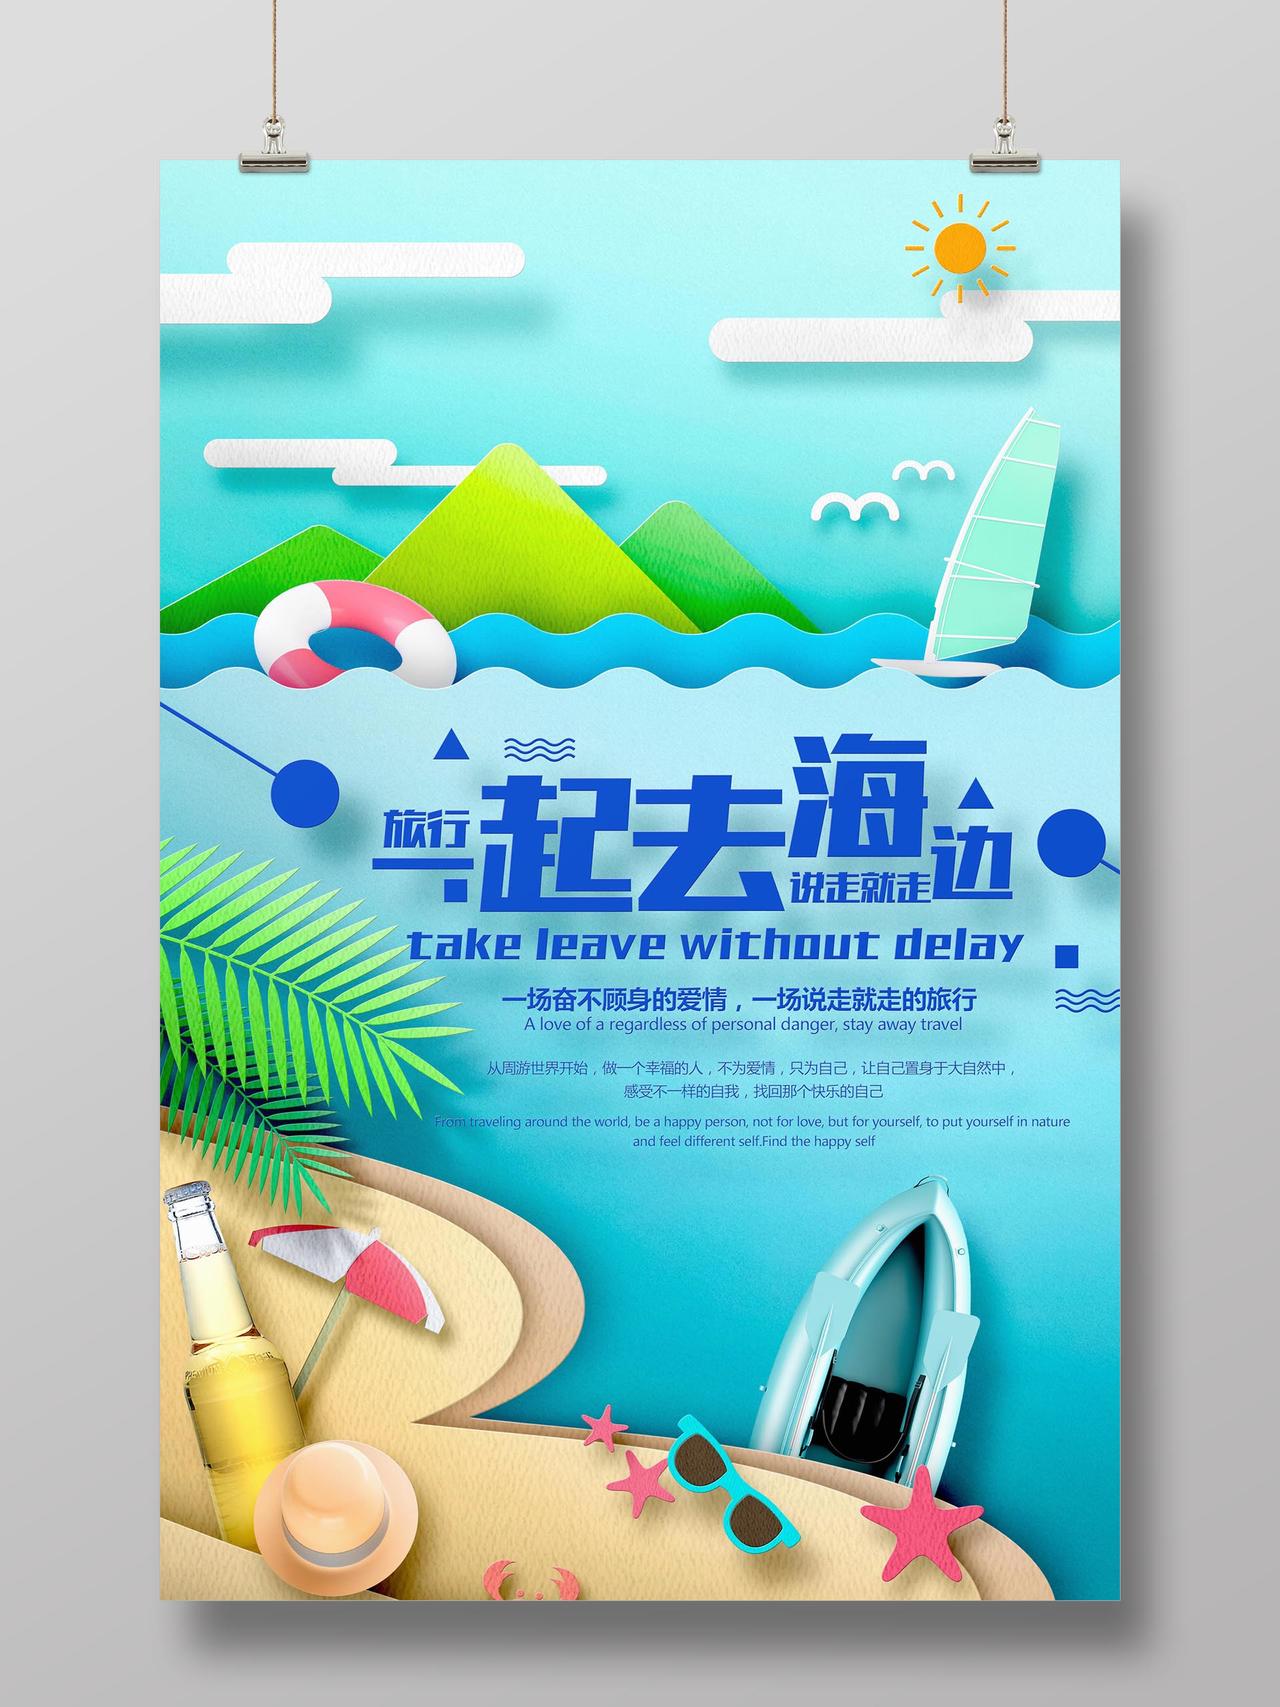 一起去海边浅蓝色清爽插画风海岛旅游宣传海报